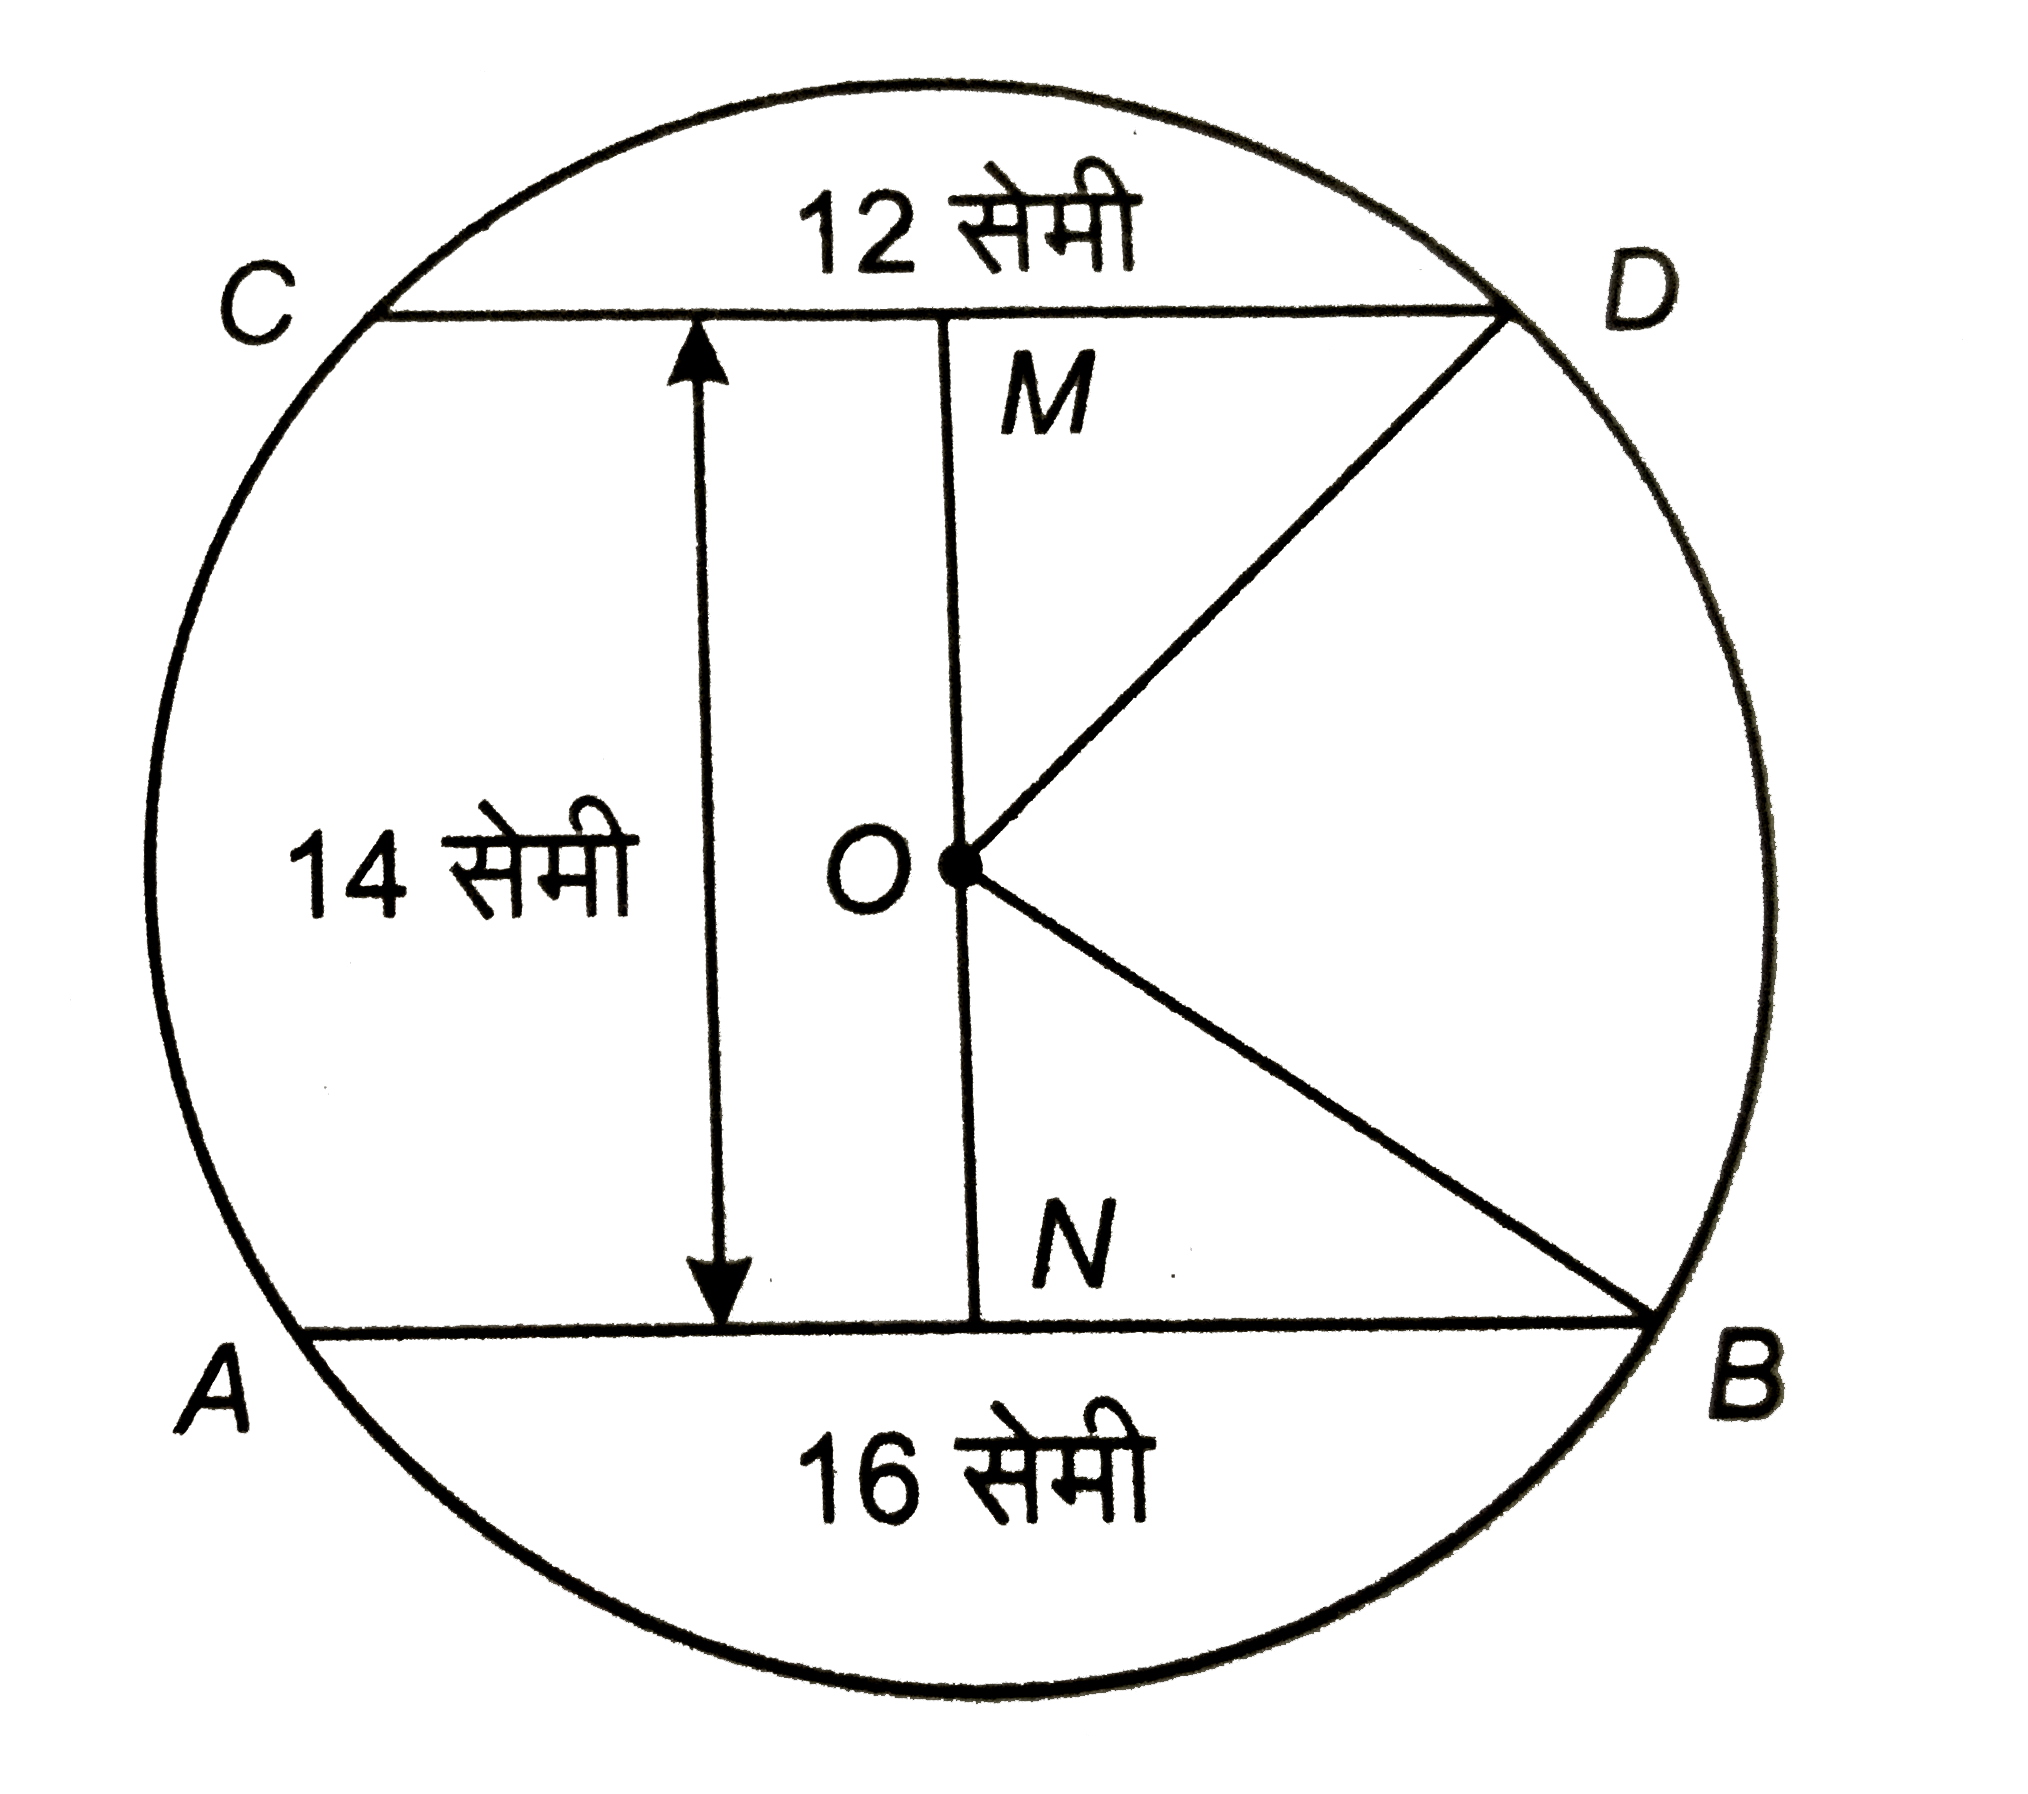 संलग्न चित्र में, AB और CD एक 'O' केन्द्र के वृत्त की दो समान्तर जीवाएँ हैं जिनकी लम्बाई क्रमश: 16 सेमी और 12 सेमी हैं | यदि इनके बीच की दूरी 14 सेमी है, तो वृत्त की त्रिज्या ज्ञात कीजिए |